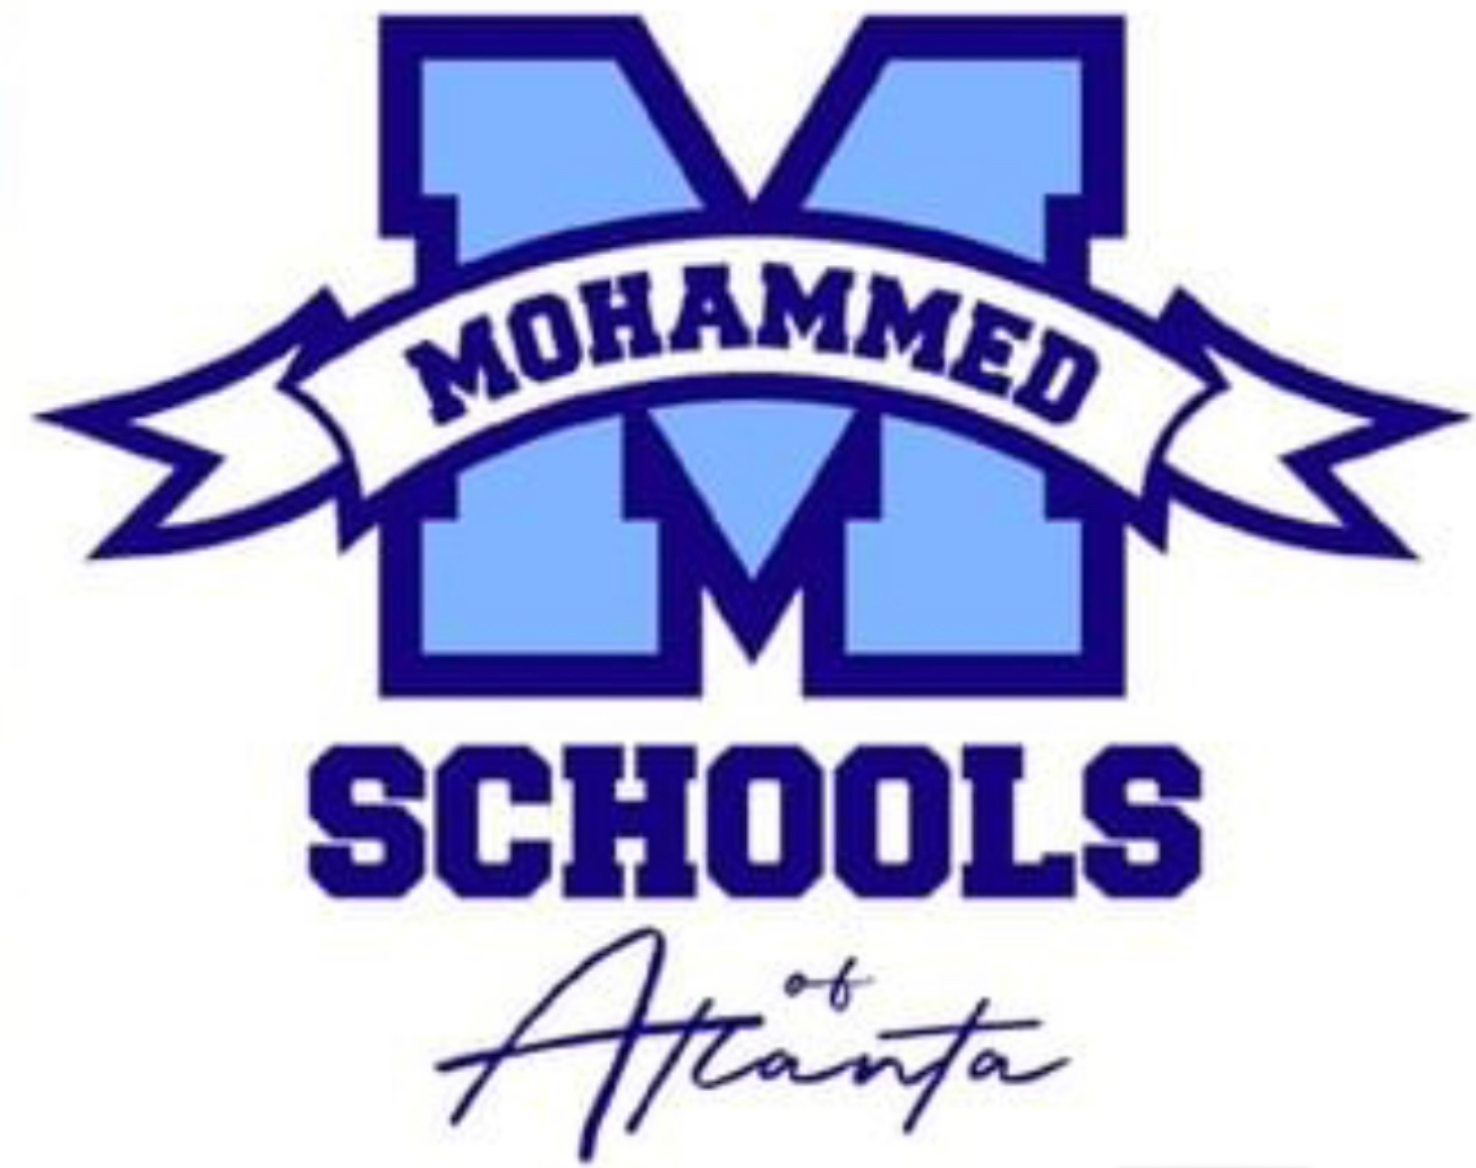 MOHAMMED SCHOOLS OF ATLANTA